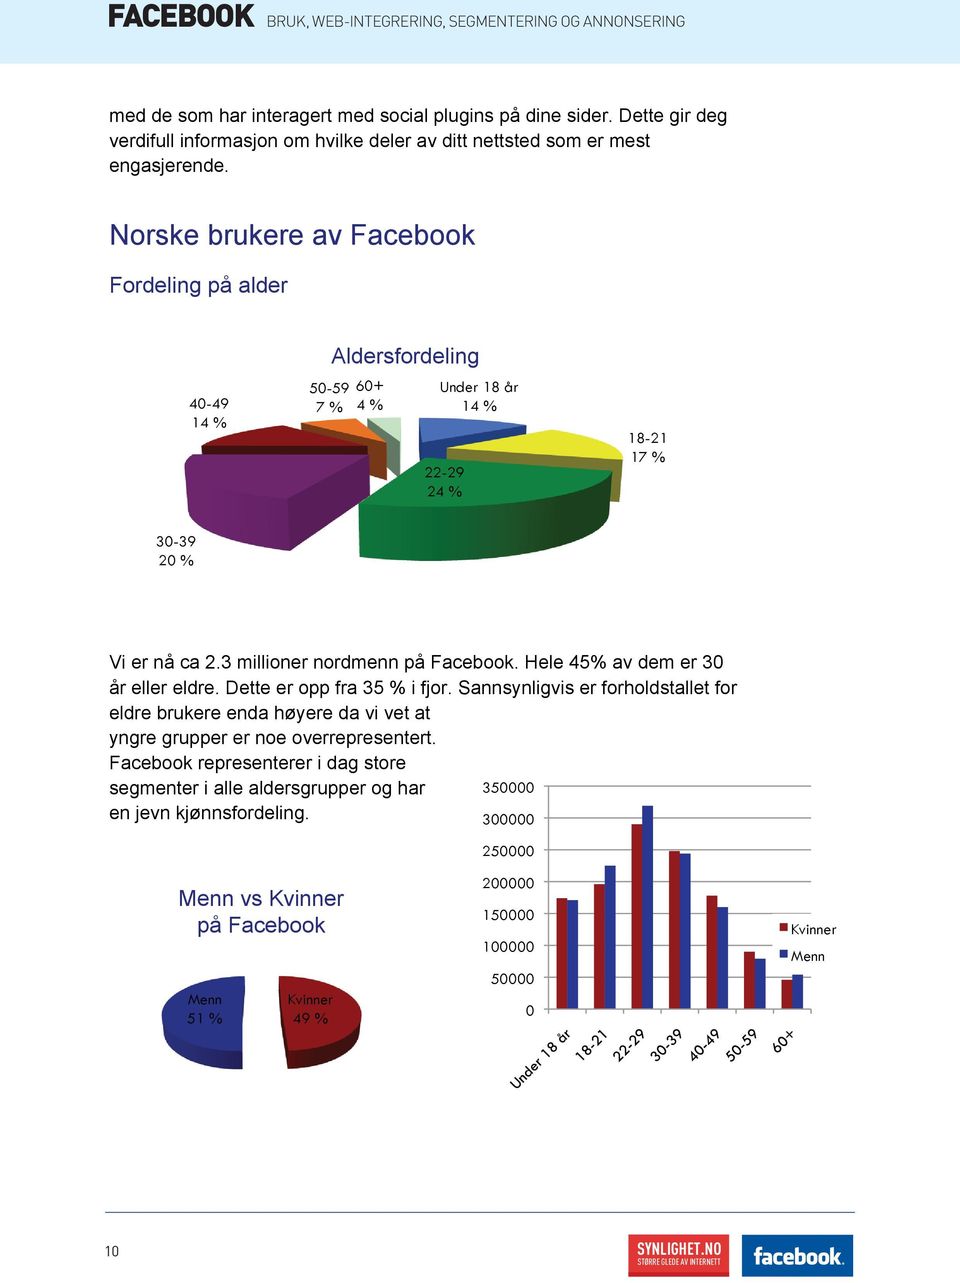 Norske brukere av Facebook Fordeling på alder 40-49 14 % 50-59 7 % Aldersfordeling 60+ 4 % Under 18 år 14 % 22-29 24 % 18-21 17 % 30-39 20 % Vi er nå ca 2.3 millioner nordmenn på Facebook.